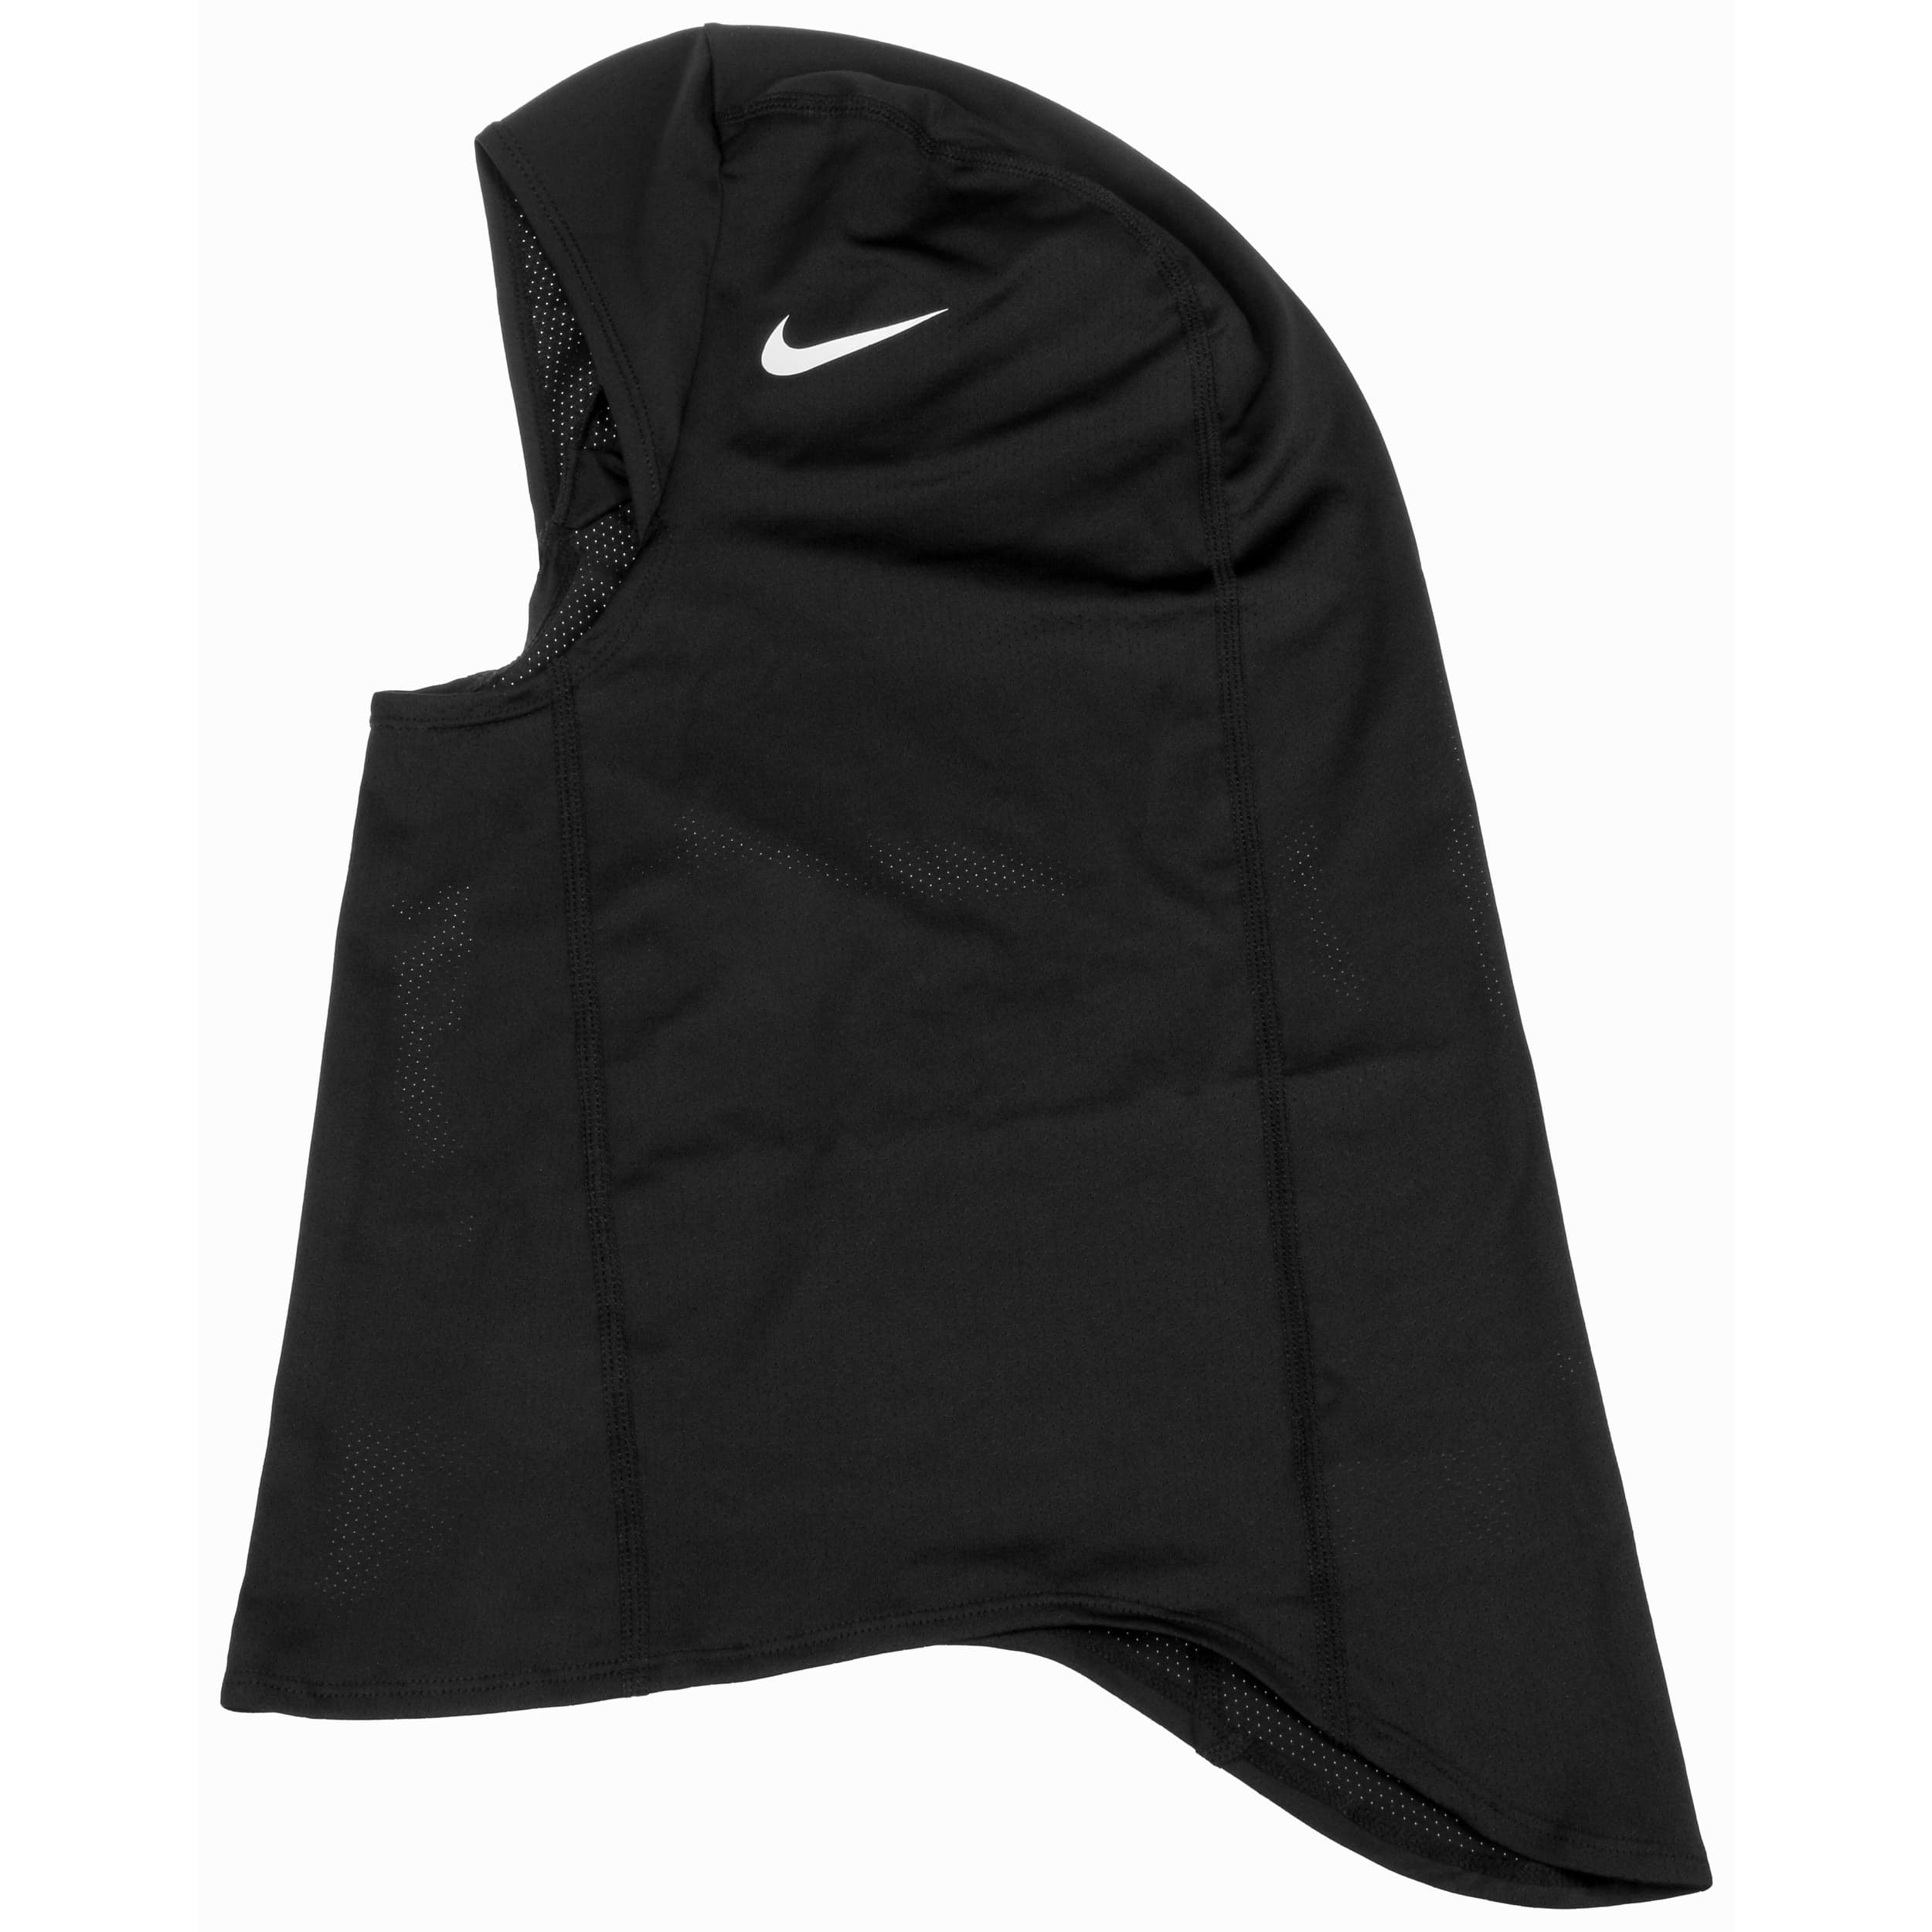 Pro Hijab 2.0 Hoofddoek by Nike - 39,00